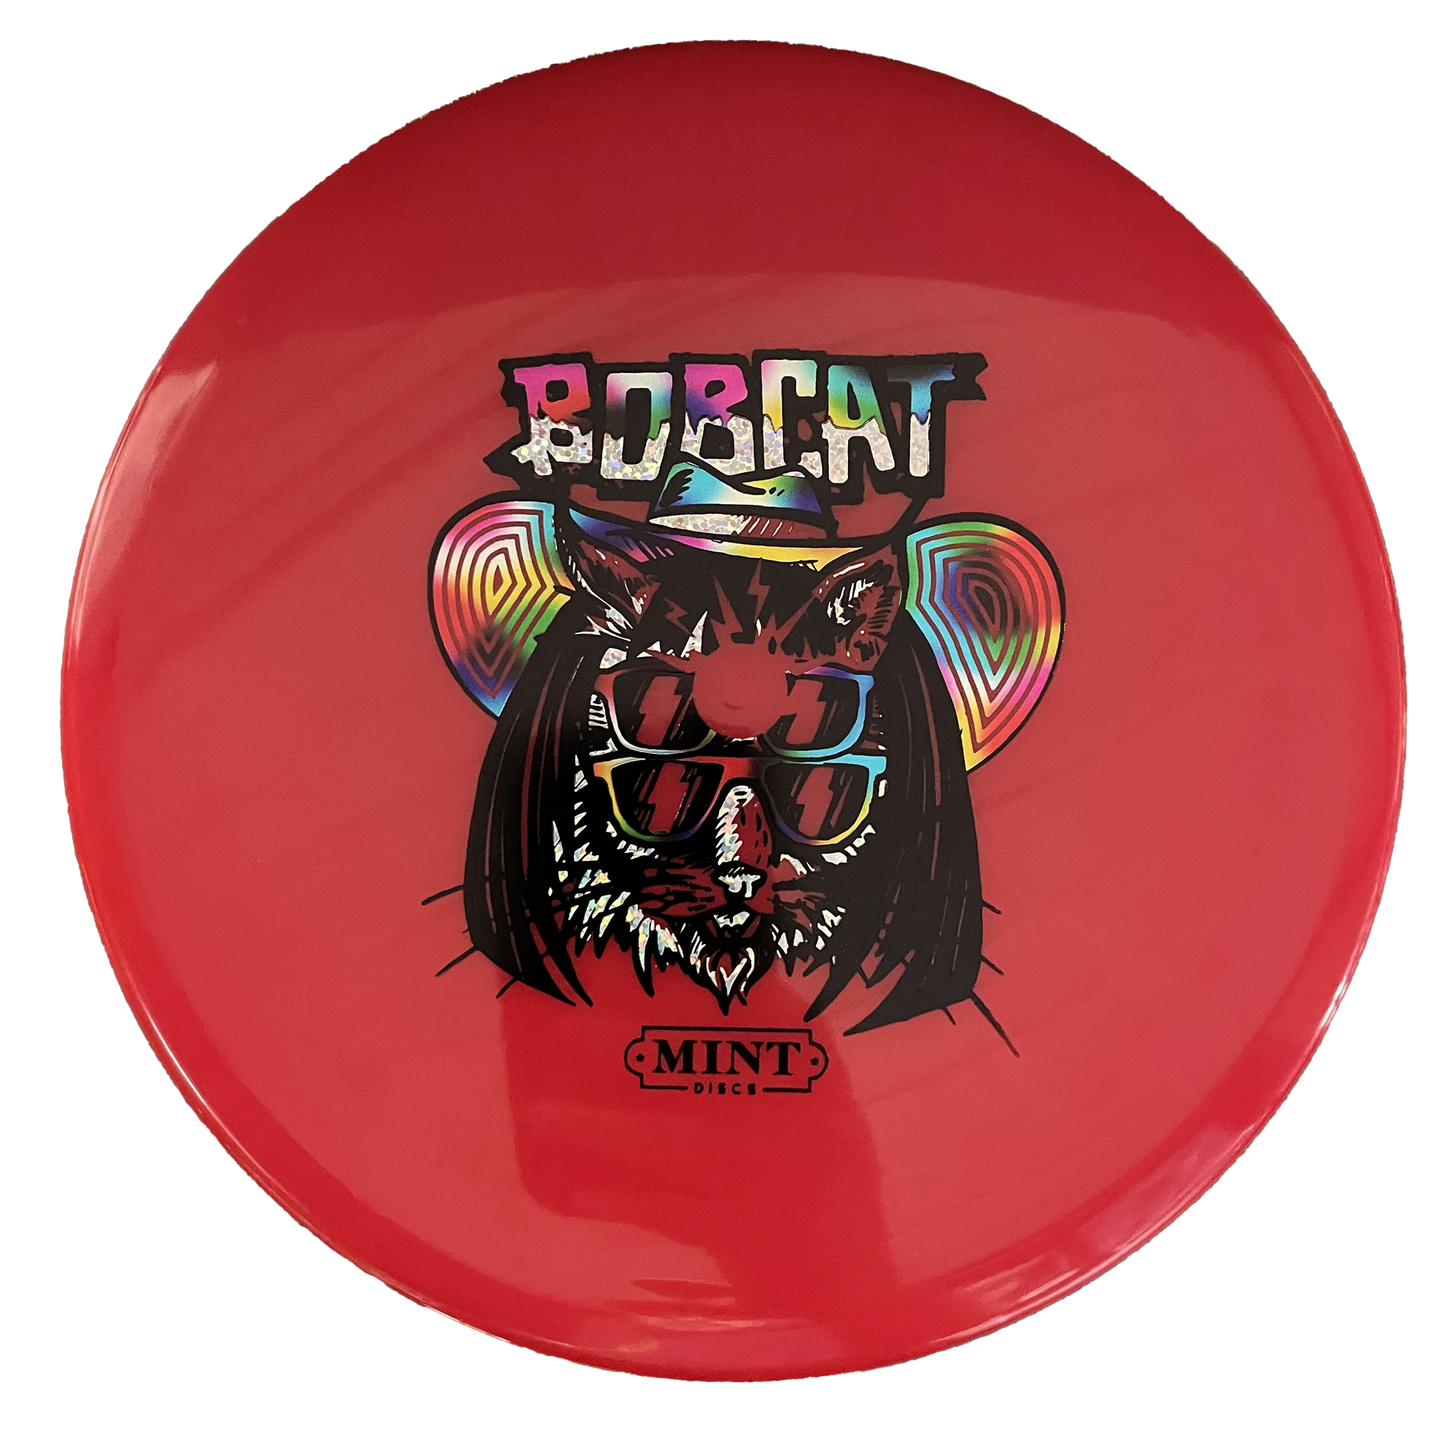 Mint Discs Bobcat Sublime - Midrange